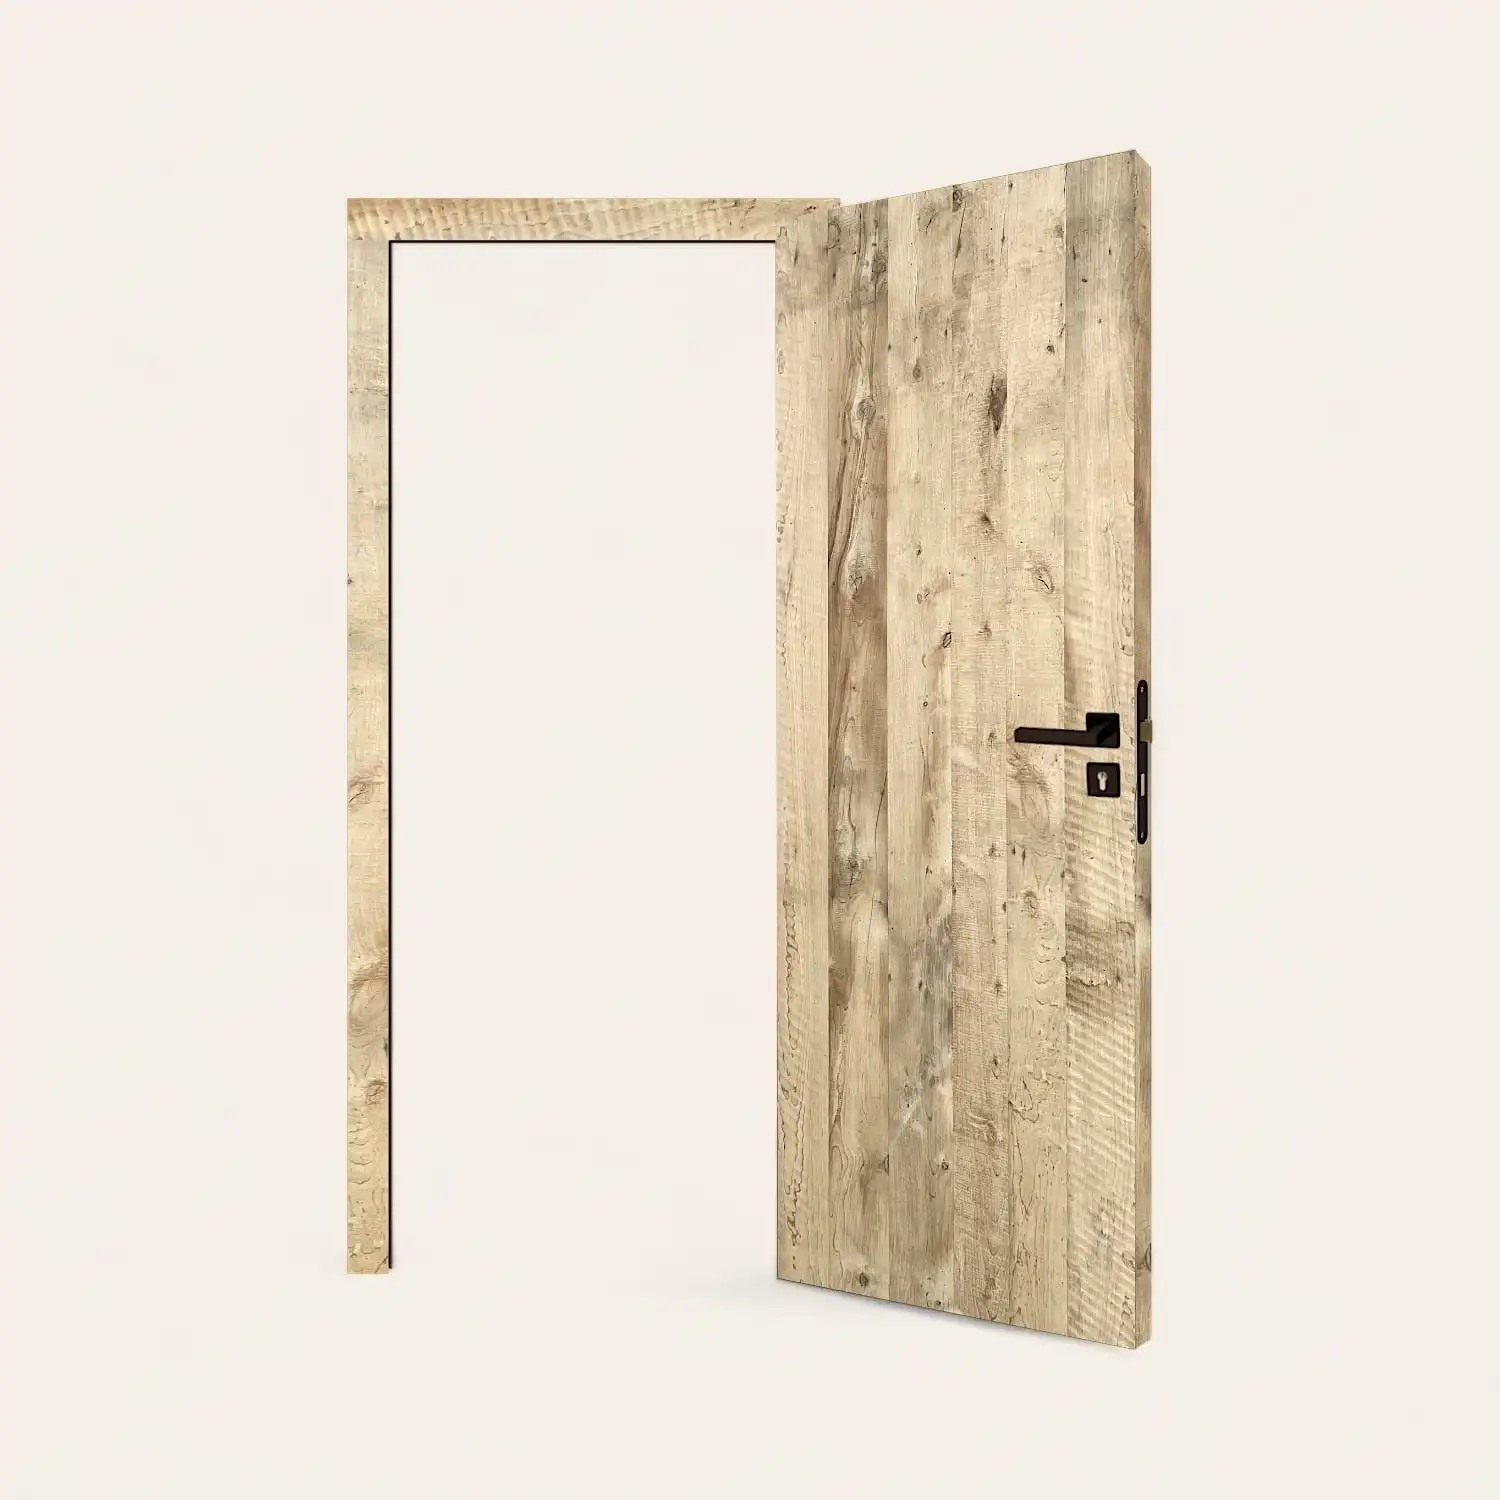  Une porte en bois ancienne avec une poignée noire. 